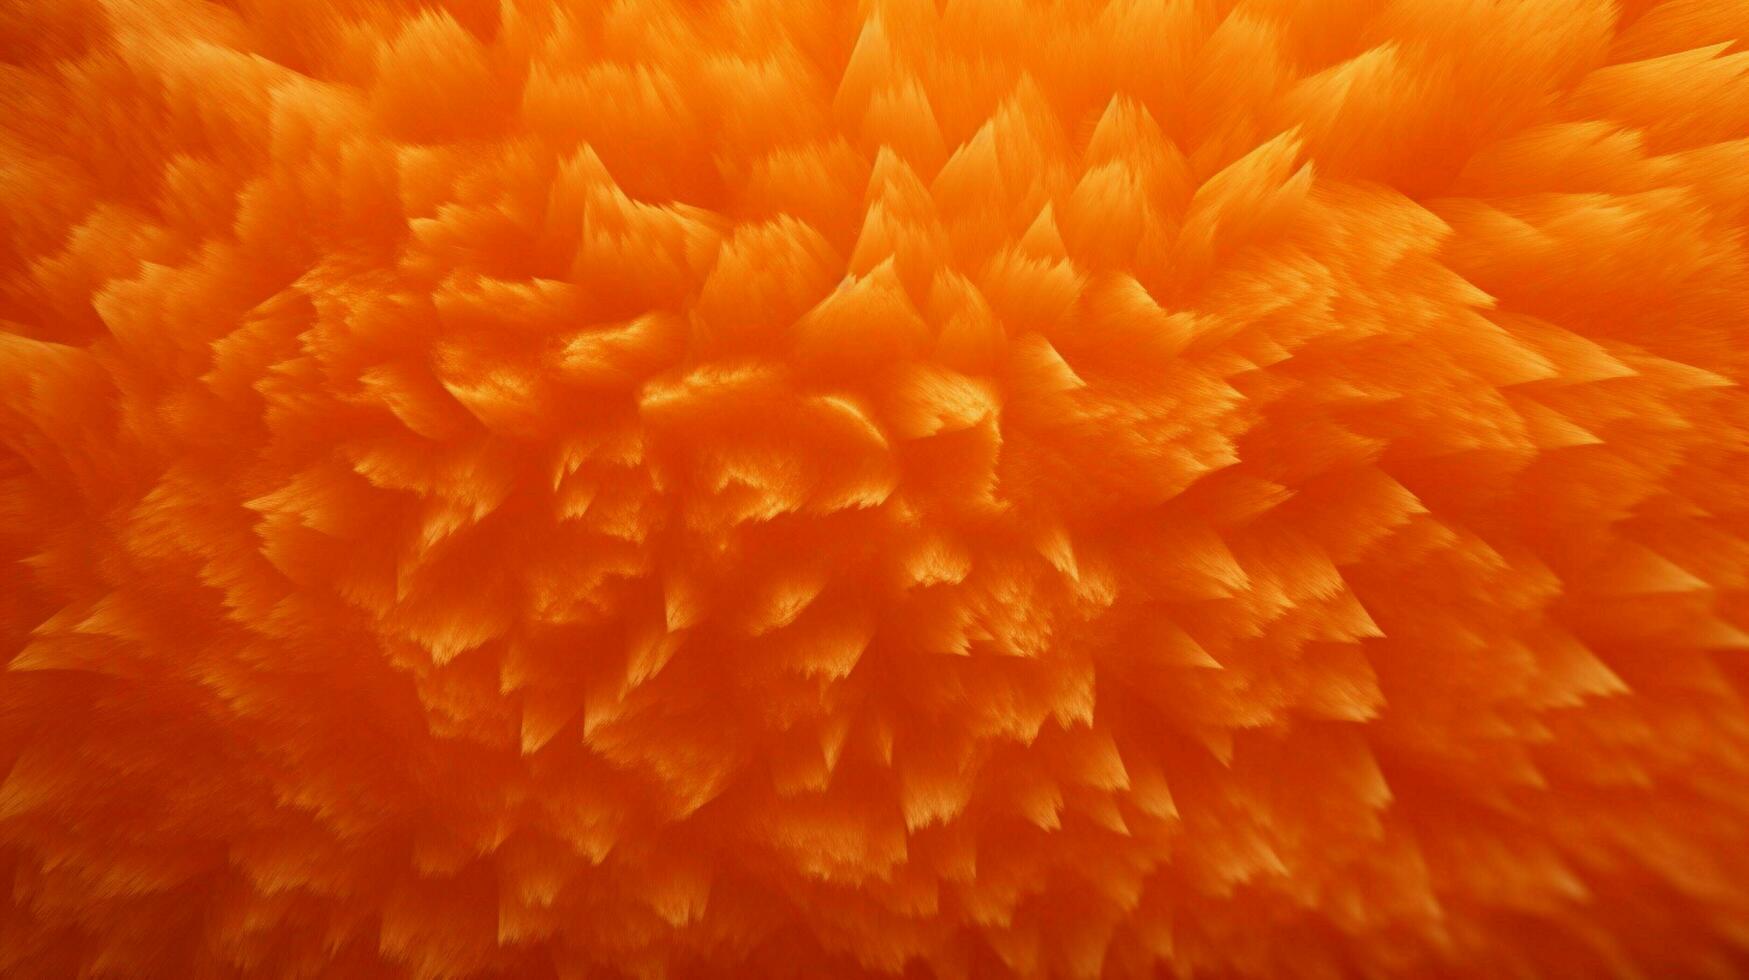 Orange texture haute qualité photo